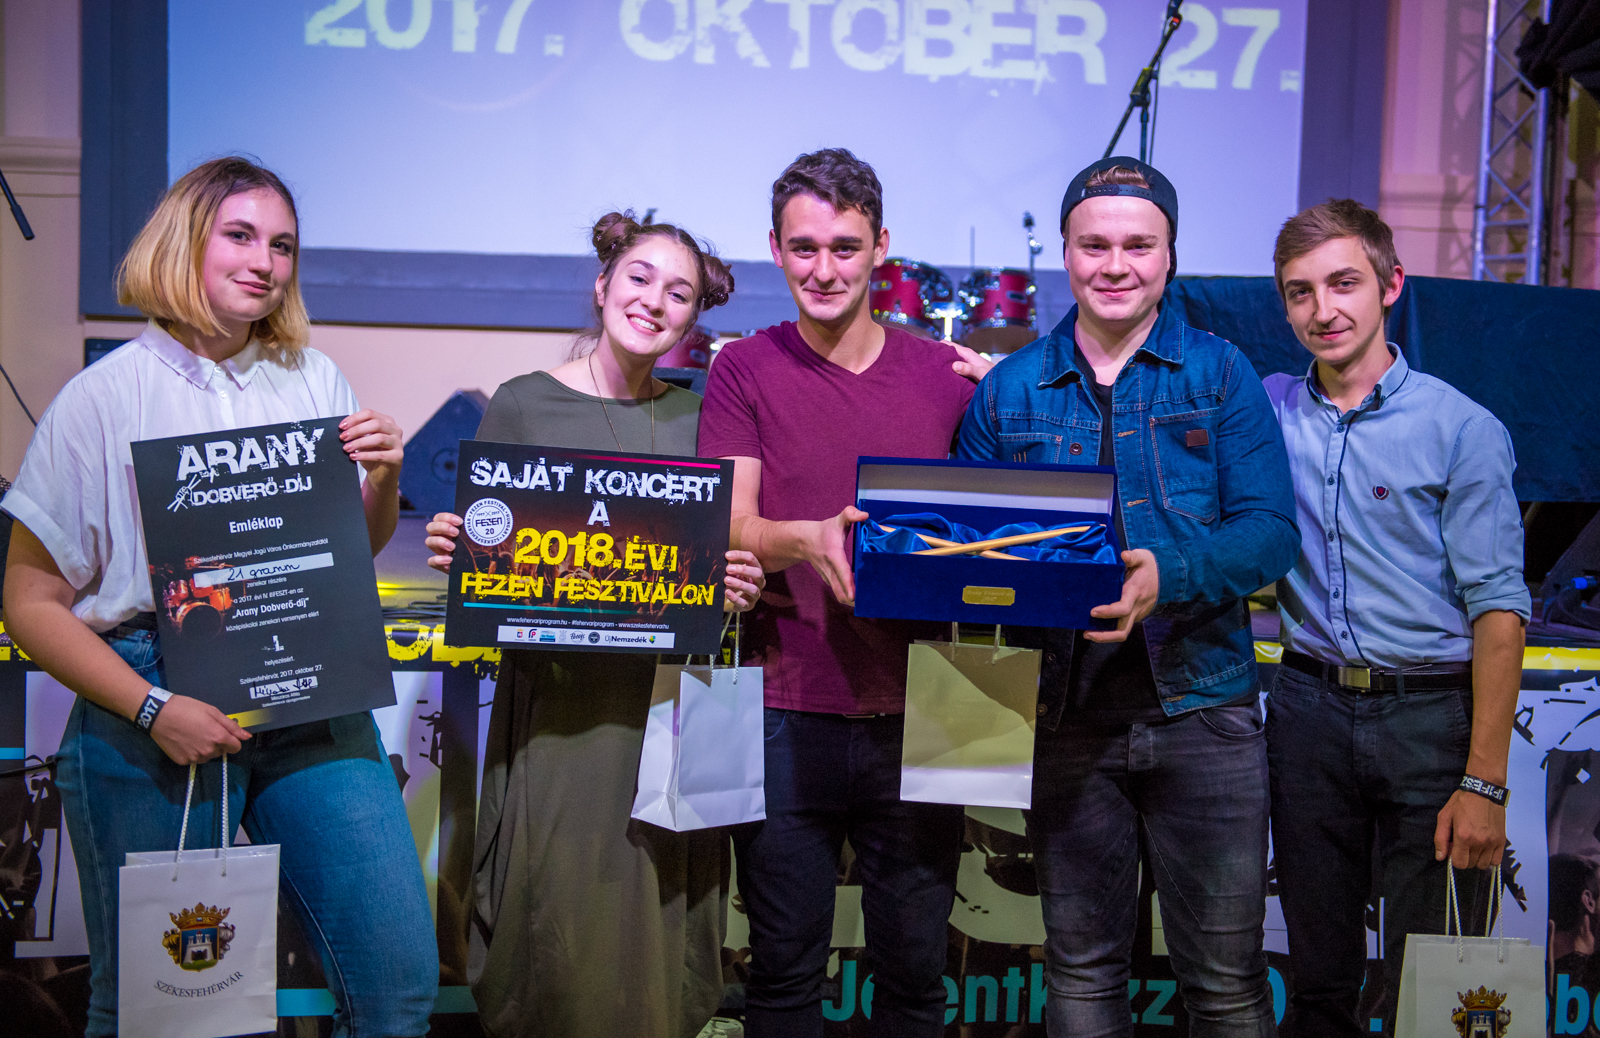 Arany Dobverő - a 21 gramm nyerte a középiskolás zenekarok versenyét